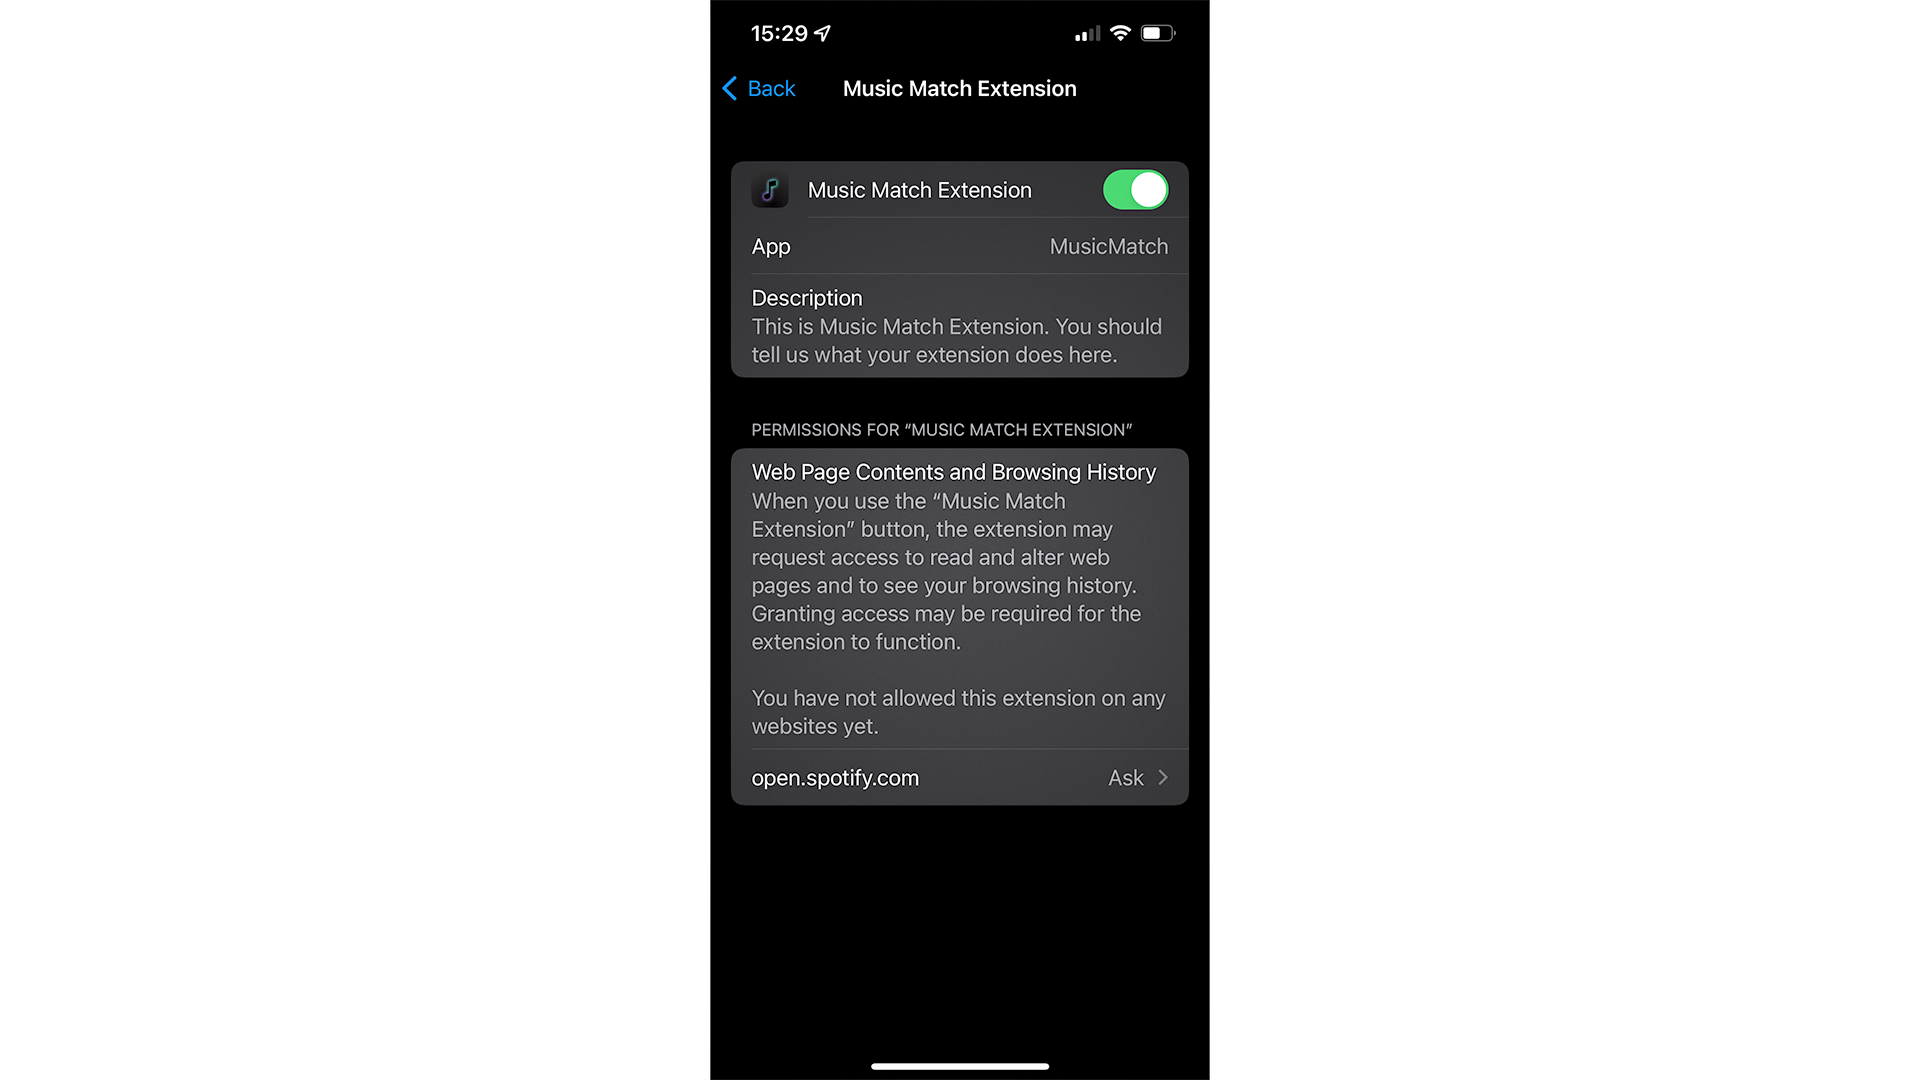 MusicMatch on iOS 15